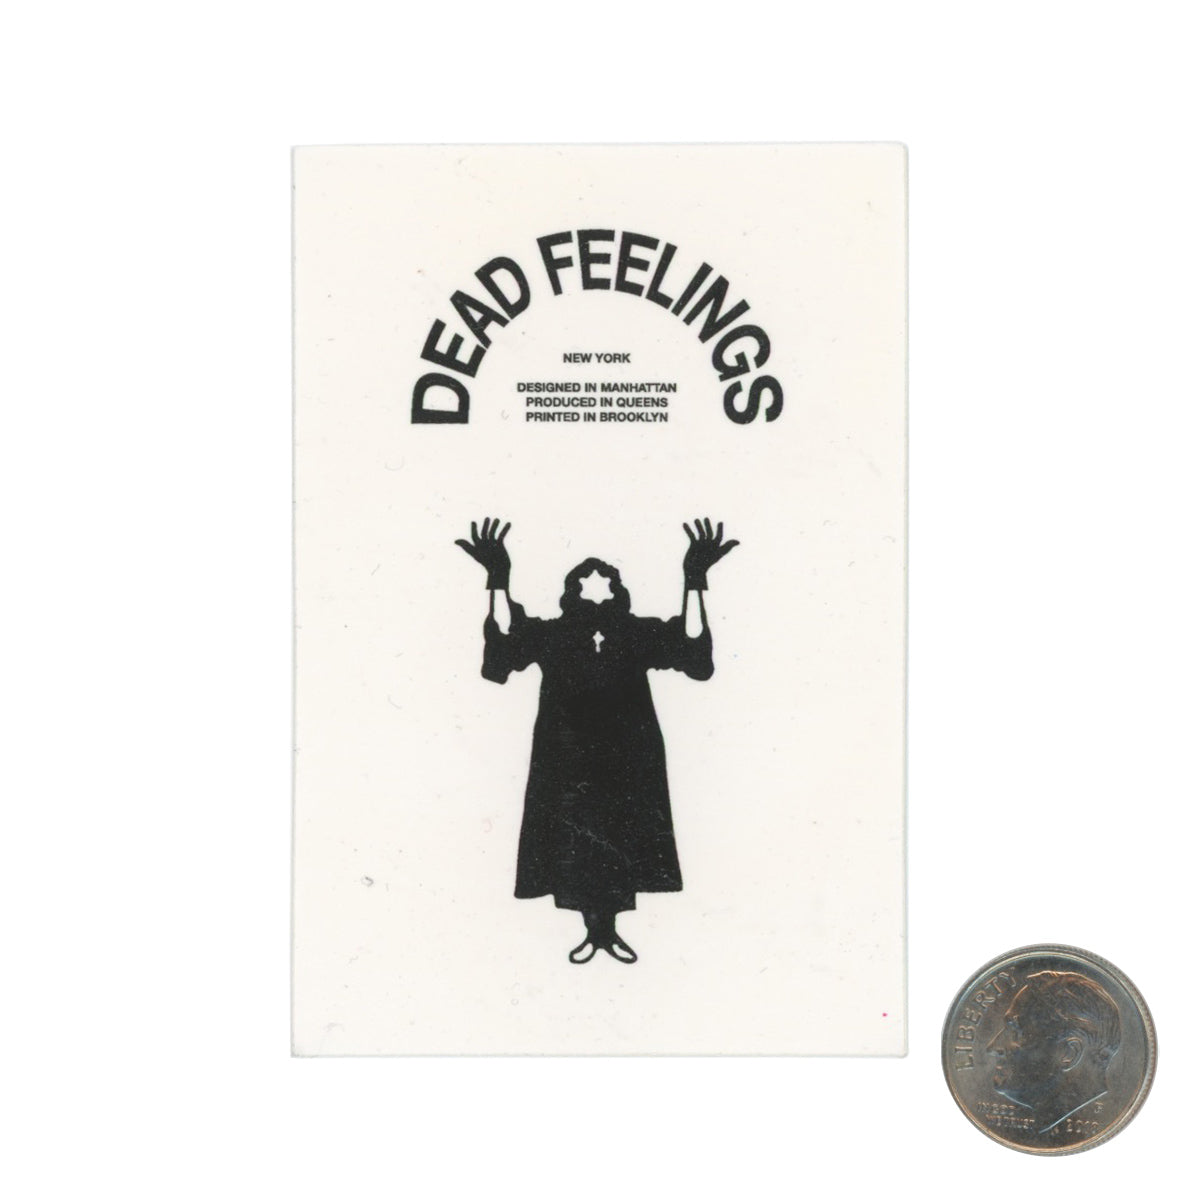 Kenzo Minami Dead Feelings Satan New York White Sticker with dime